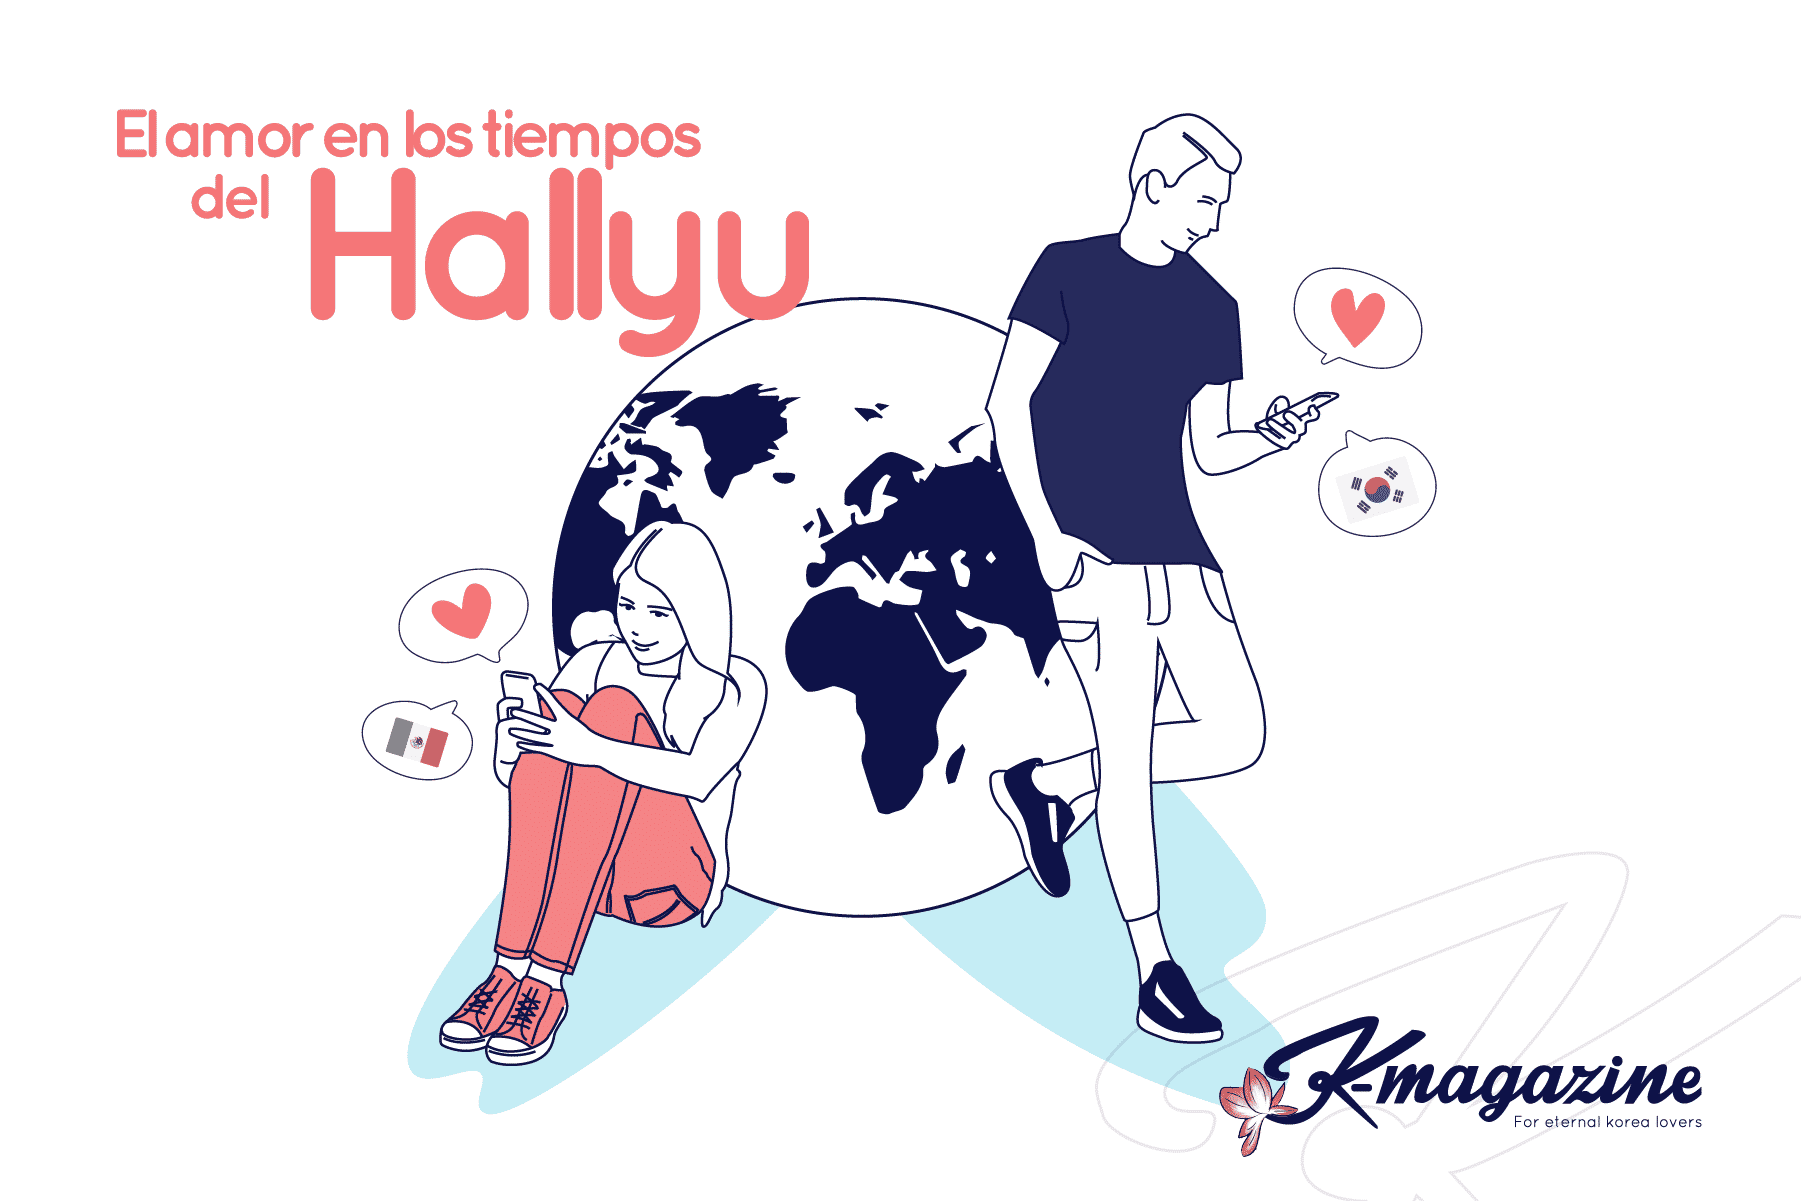 El amor en los tiempos del Hallyu